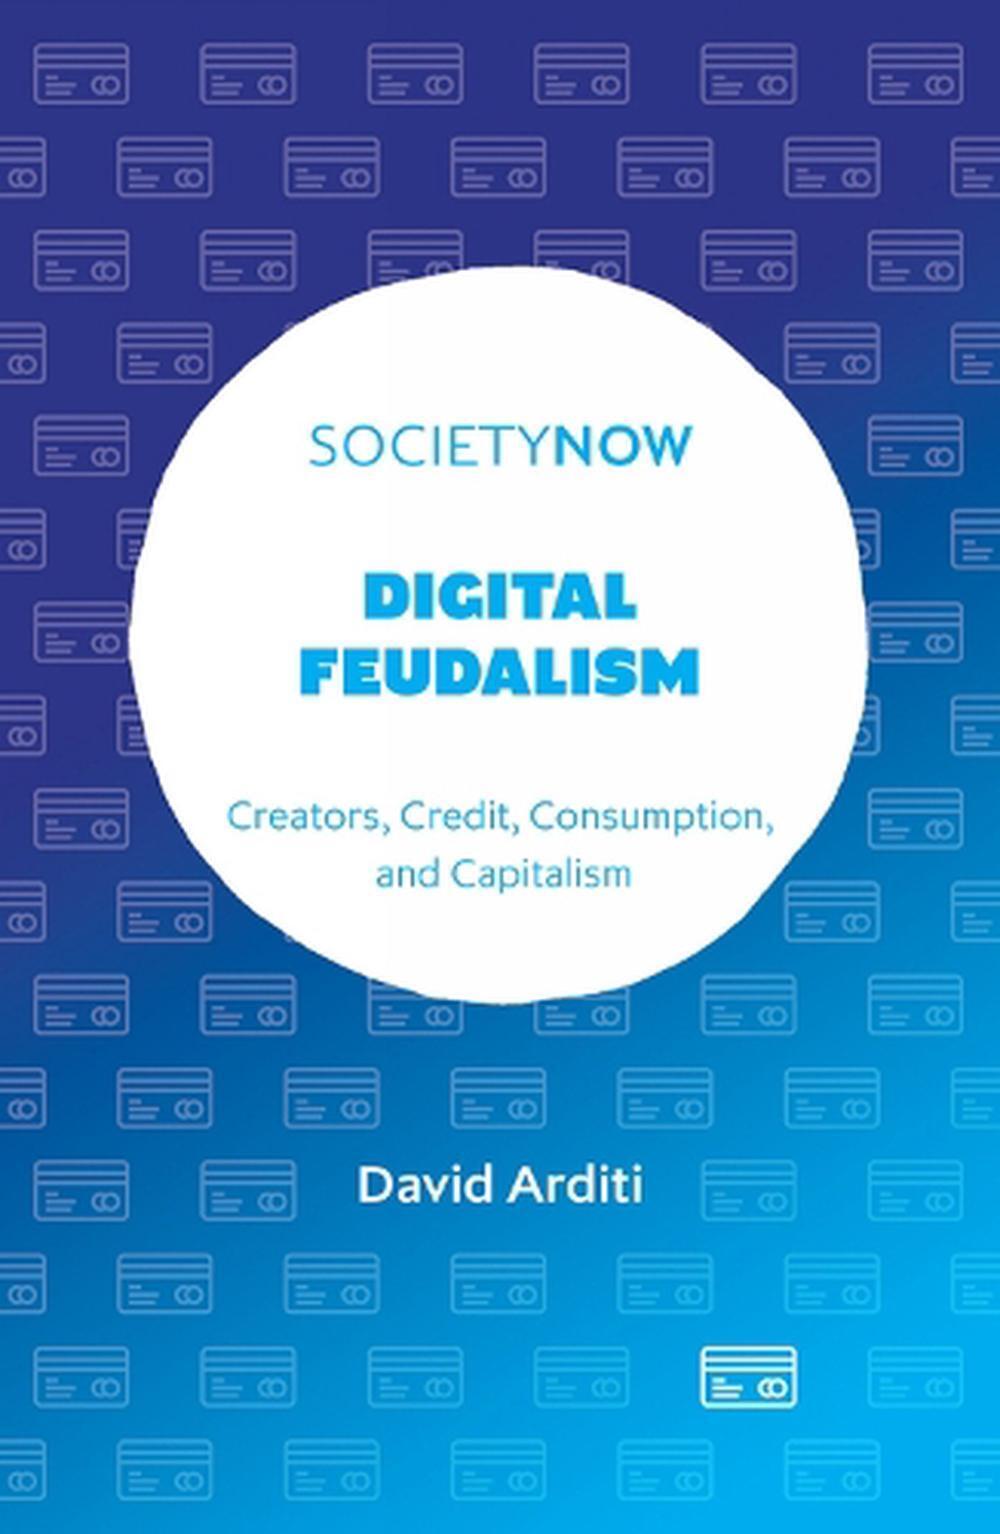 David Arditi: Digital Feudalism (2023, Emerald Publishing Limited)